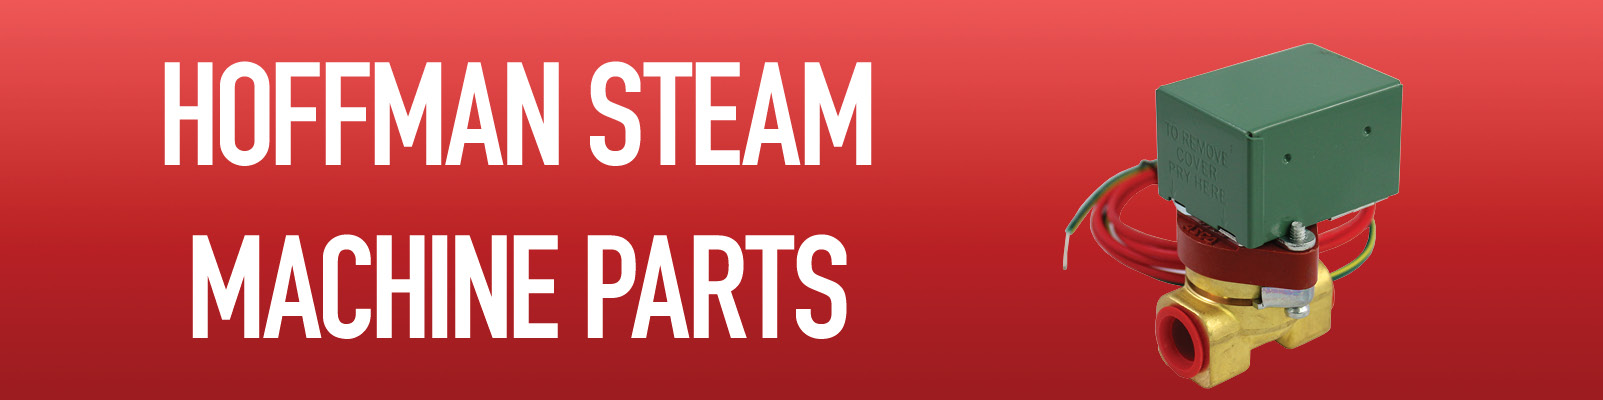 Hoffman Steam Machine Parts